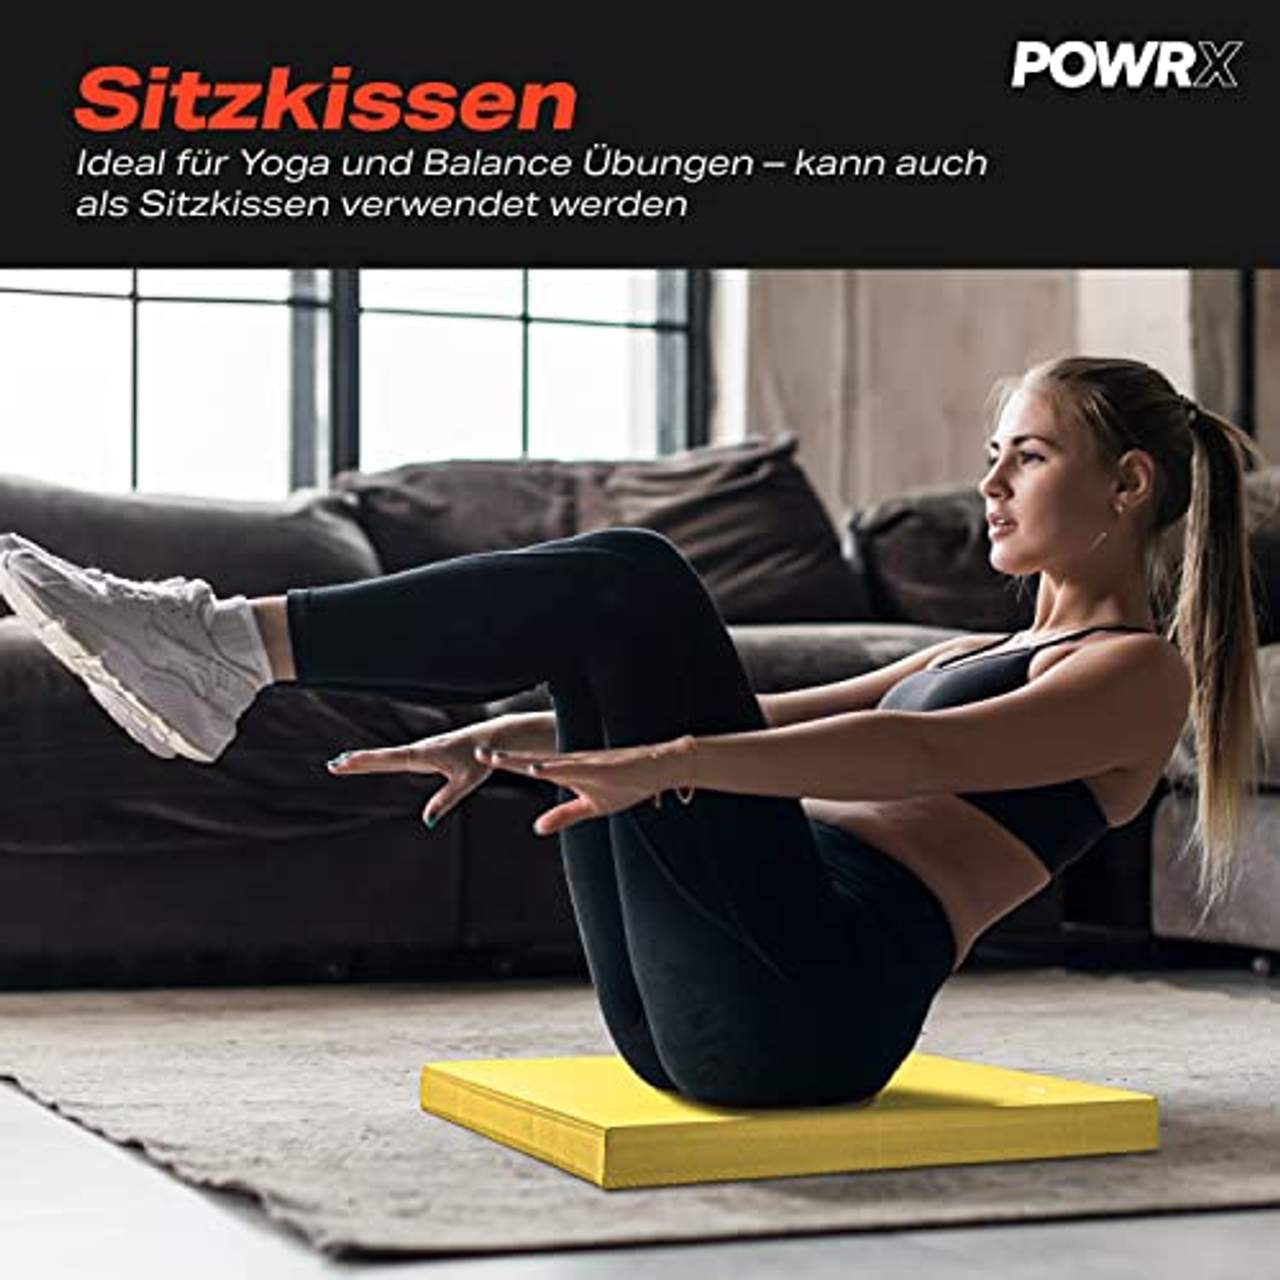 POWRX Balance Pad Sitzkissen/Kissen Yoga Pilates